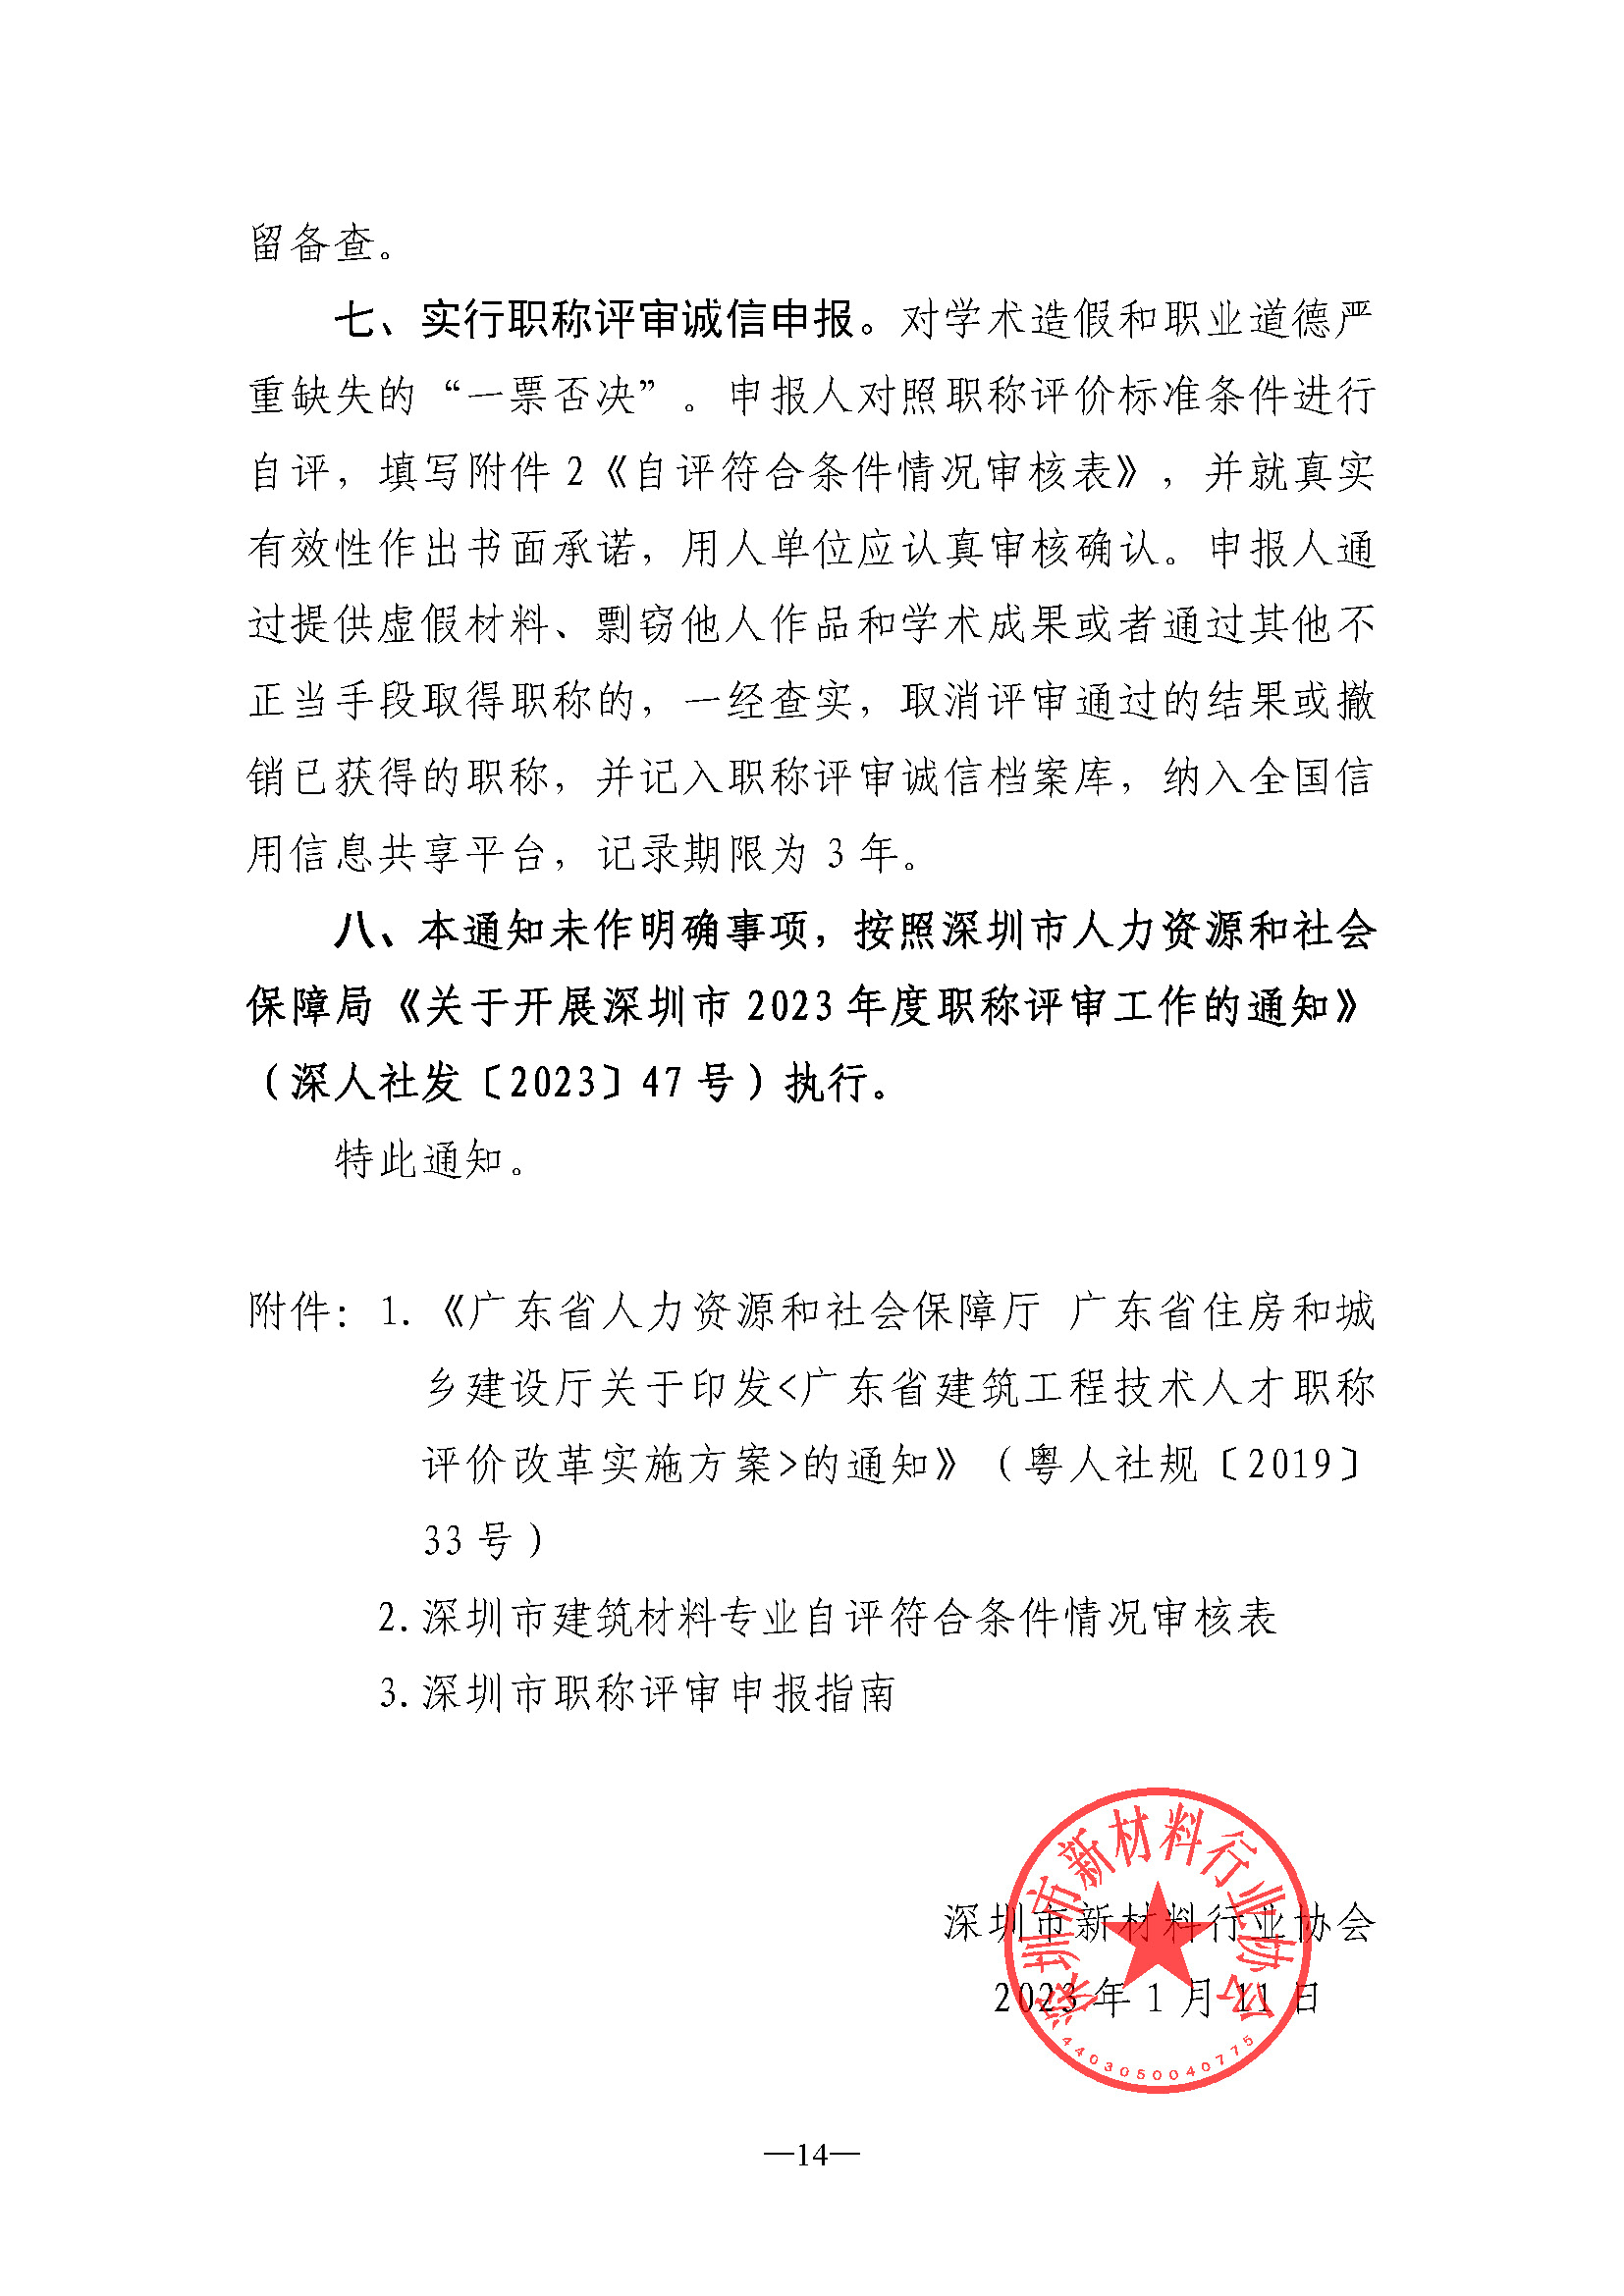 关于开展深圳市2023年度建筑材料专业职称评审工作的通知_页面_14.jpg